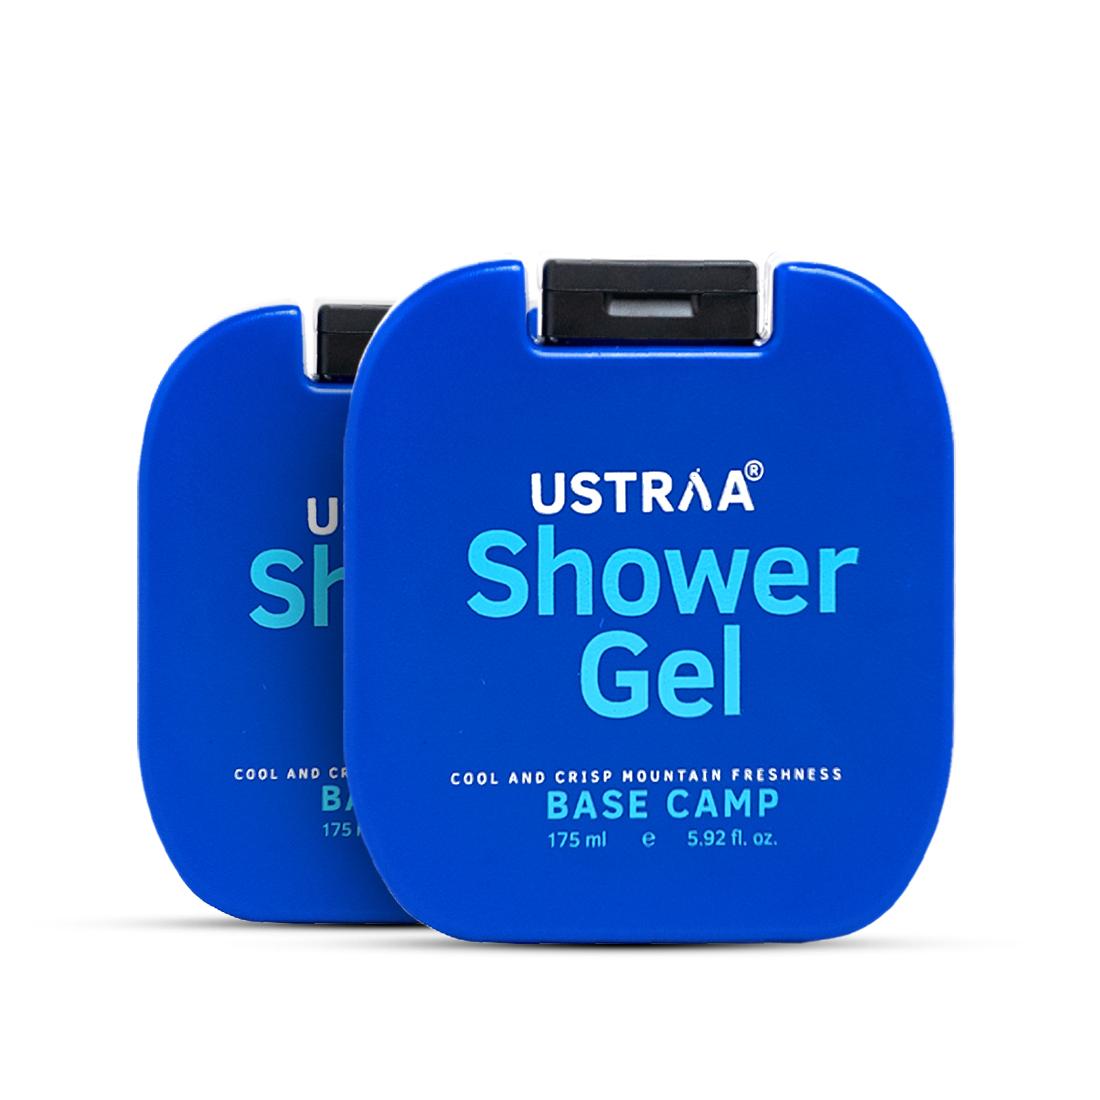 Ustraa Shower Gel - Base Camp - 175ml - Set of 2